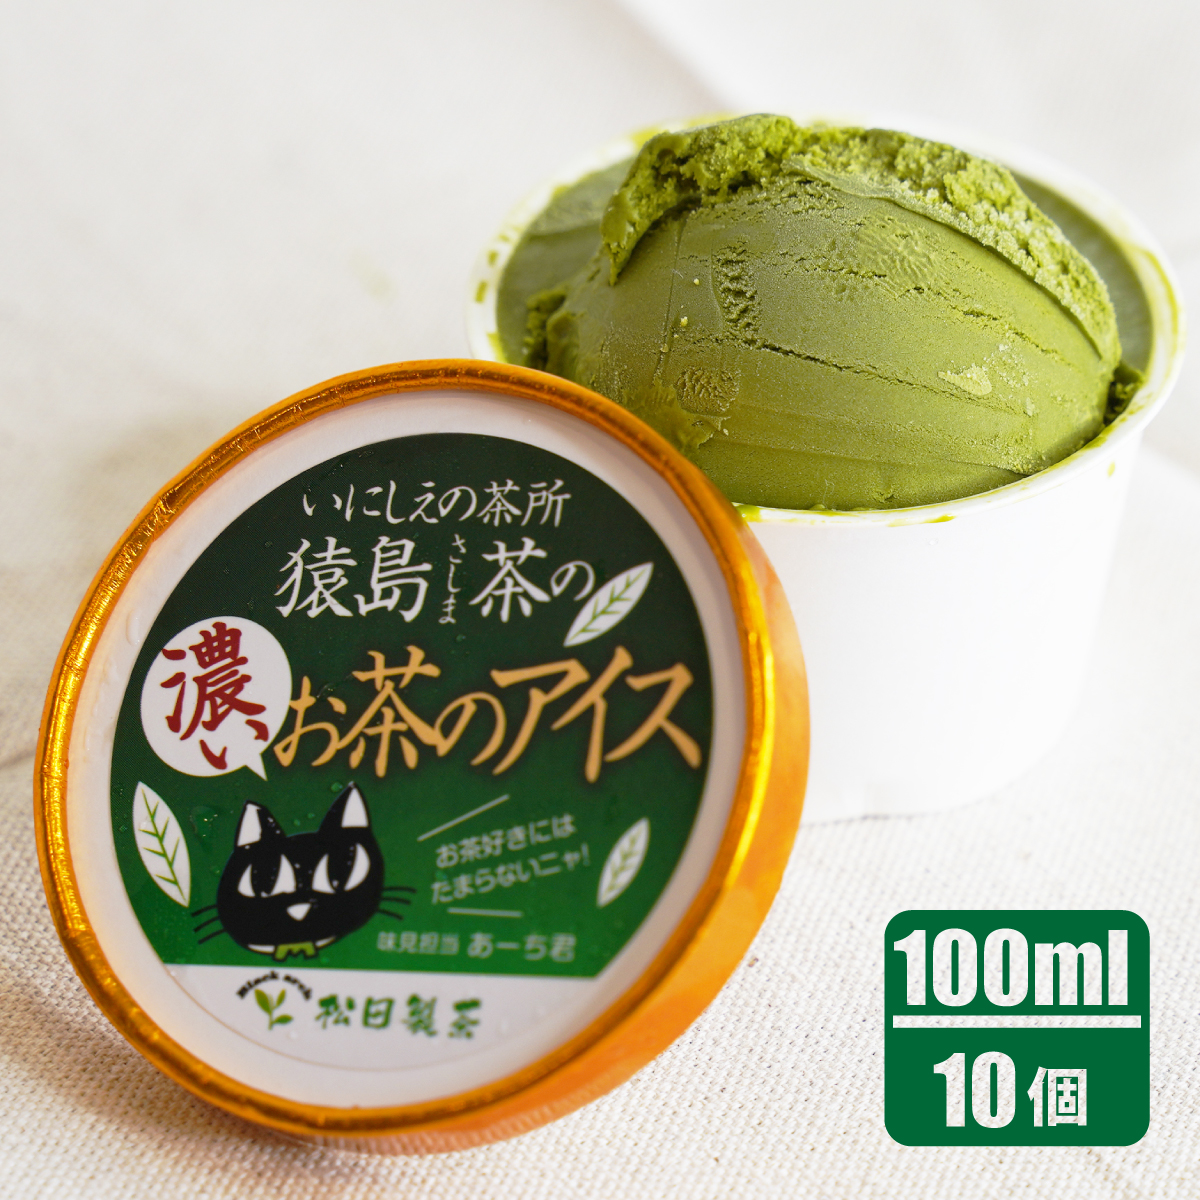 猿島茶の濃いお茶のアイス/100ml(10個)サムネイル